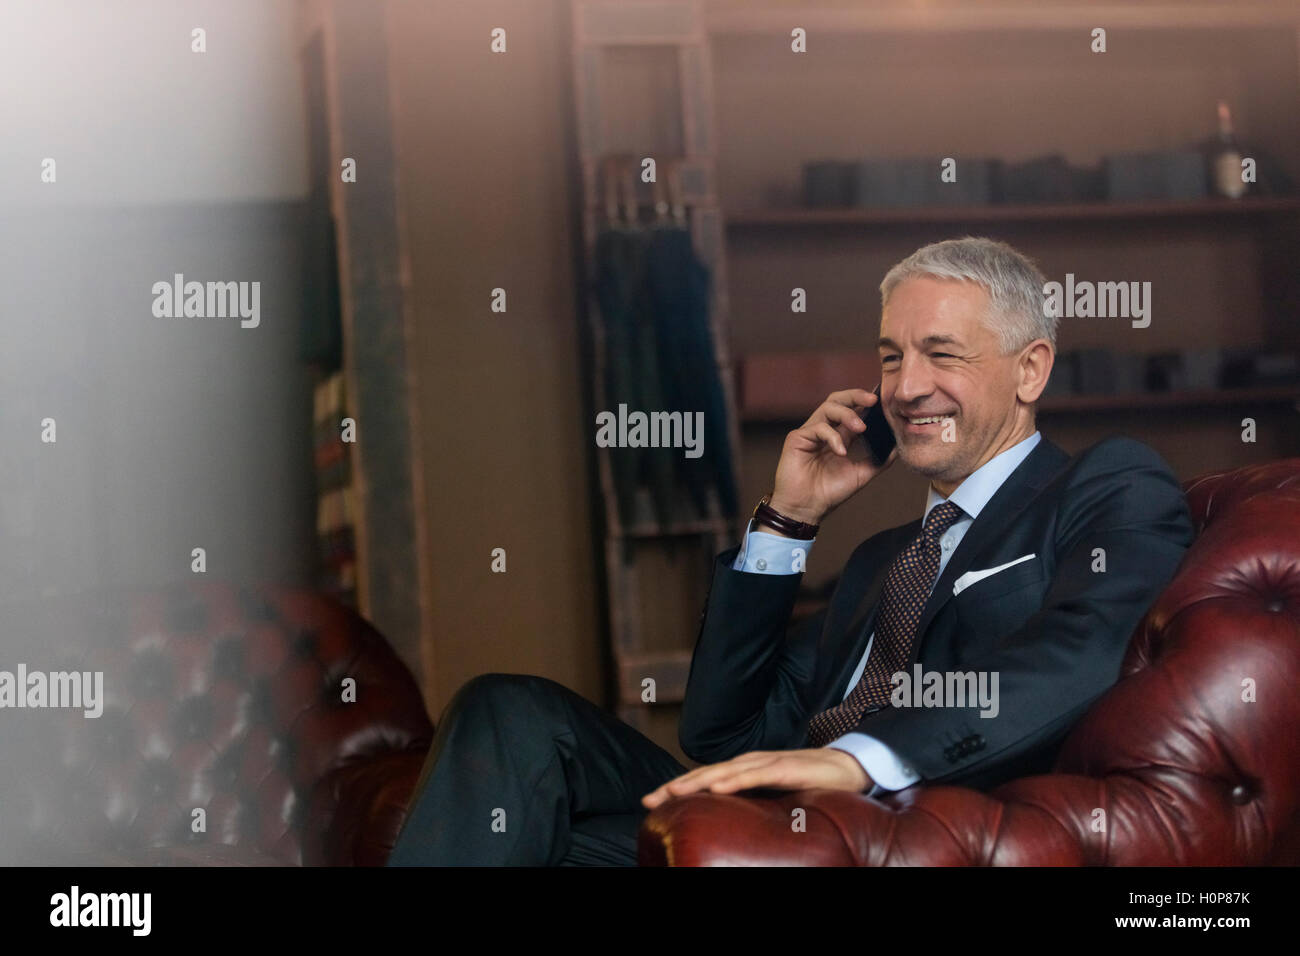 Smiling businessman téléphone cellulaire boutique de vêtements pour homme Banque D'Images